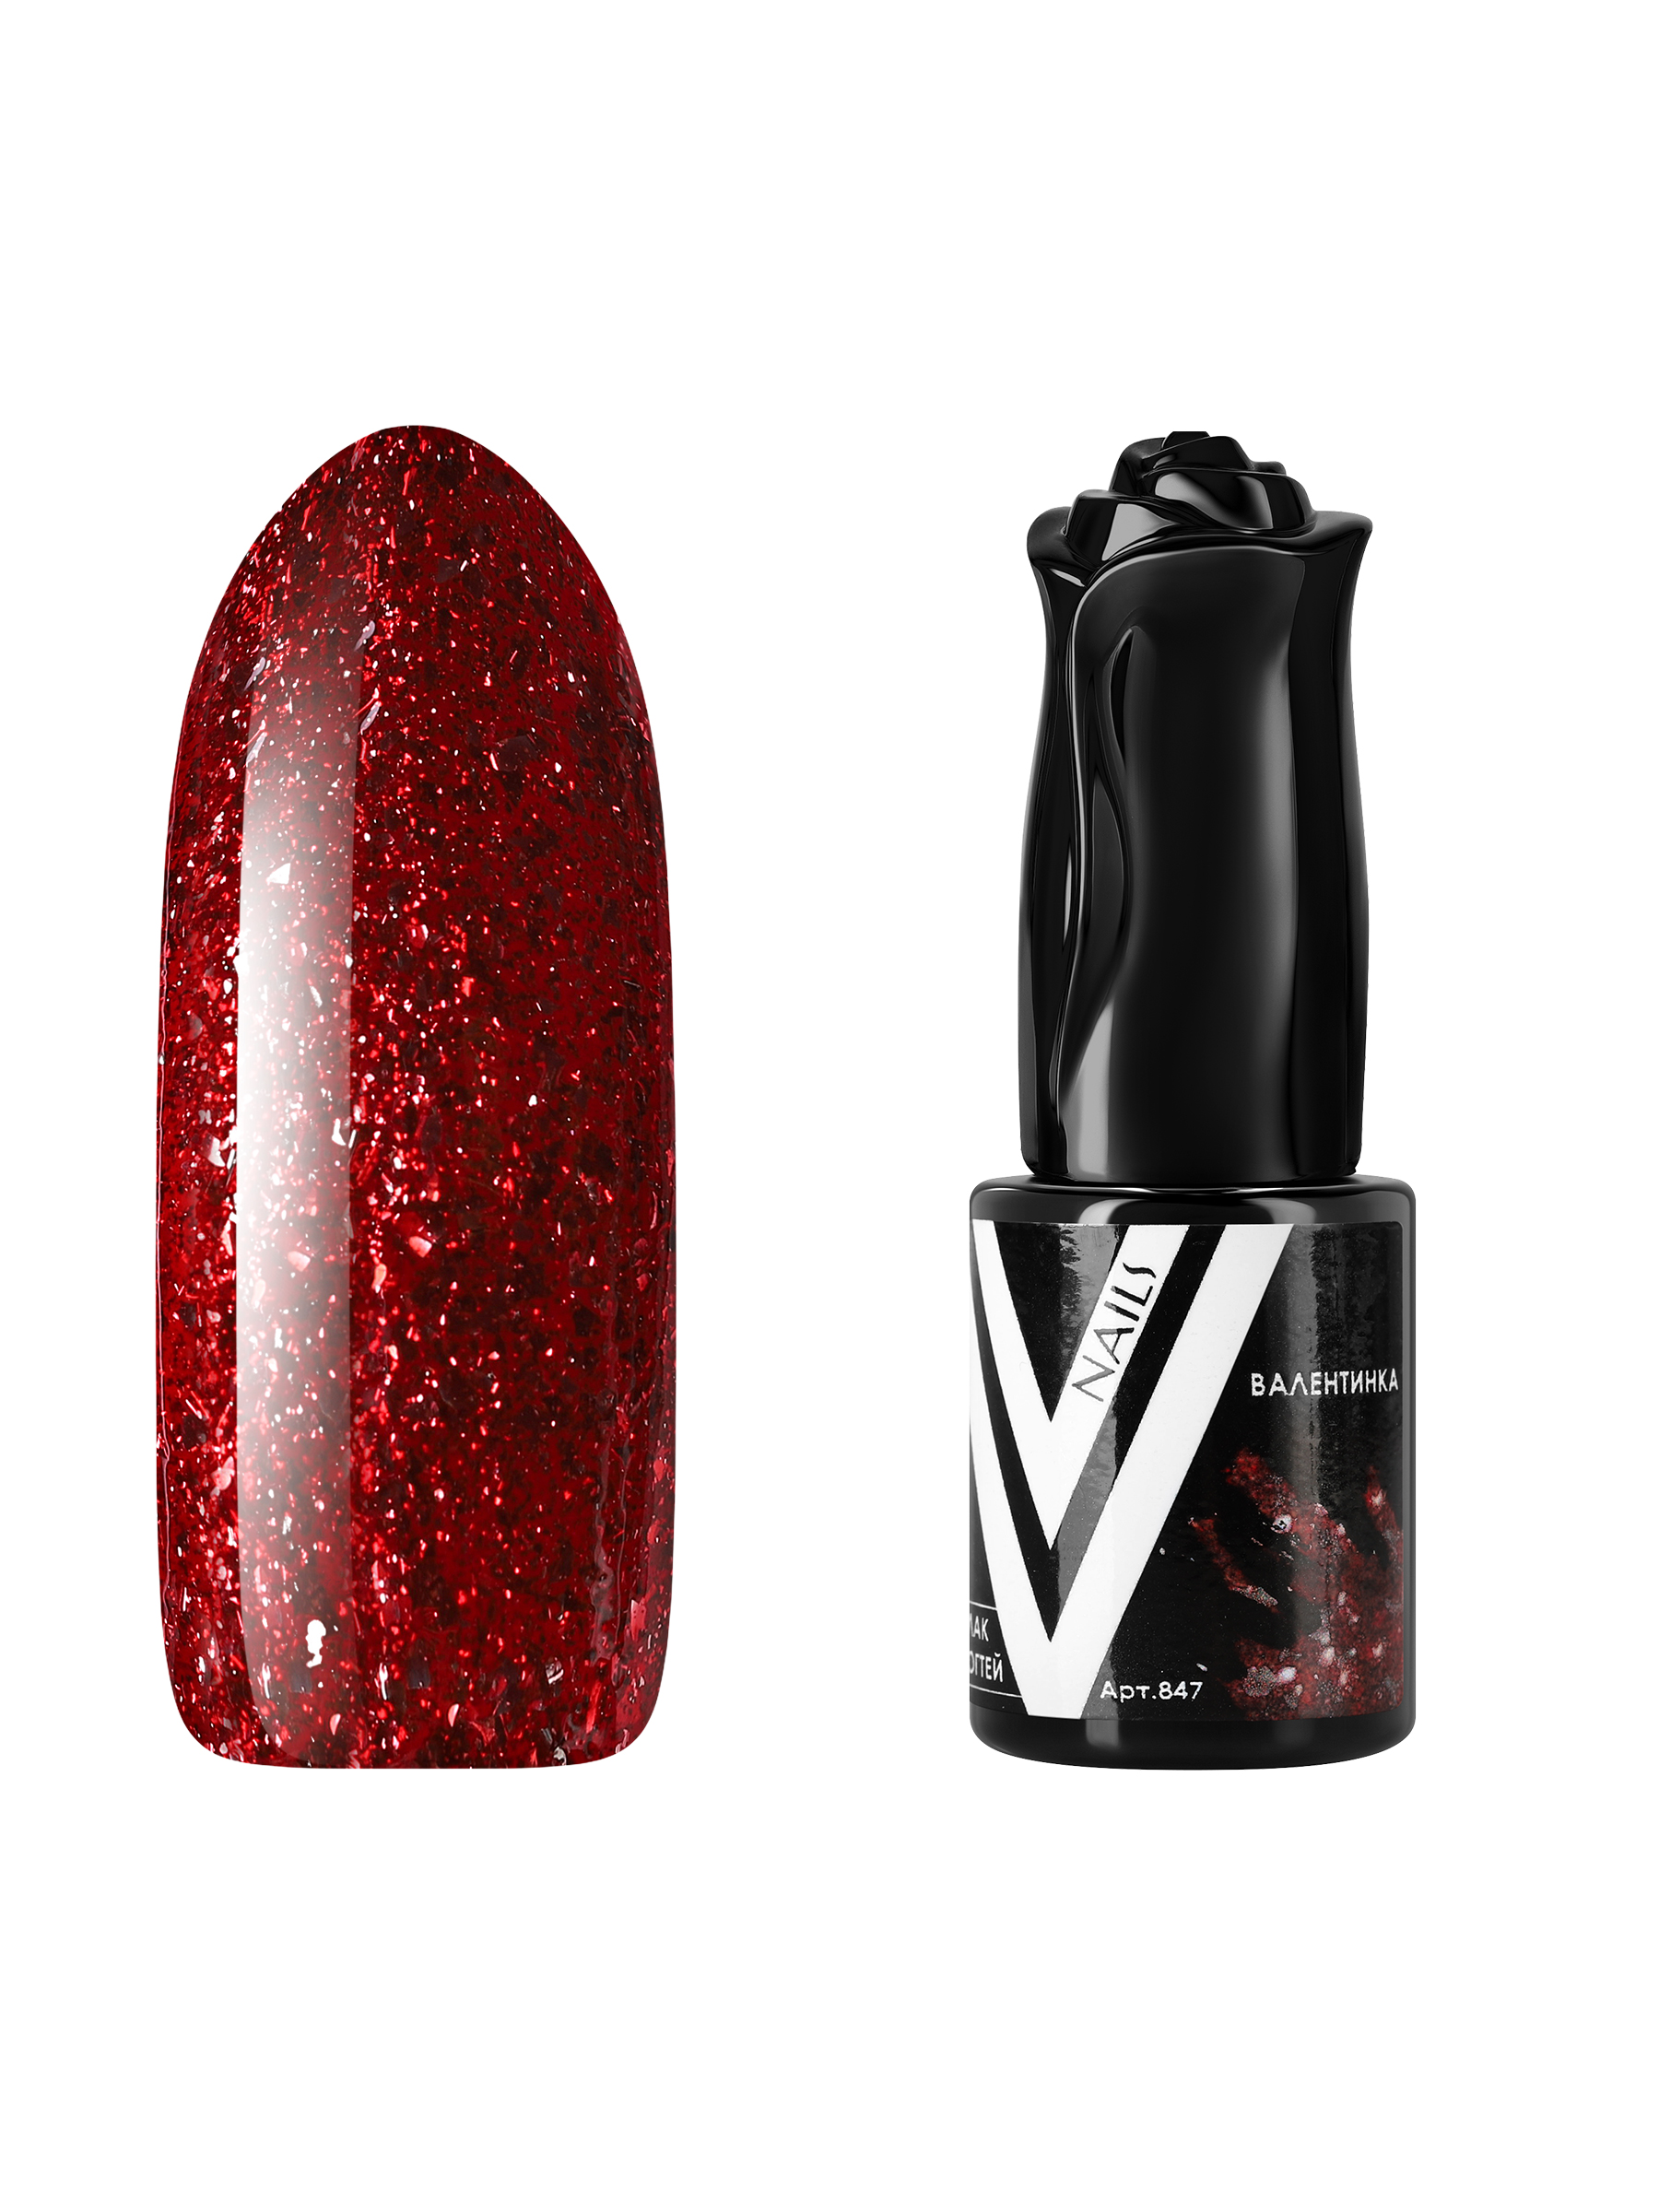 Гель-лак для ногтей с блестками Vogue Nails плотный, насыщенный, темный, красный, 10 мл фотодерм cолнцезащитный крем гель m spf50 28546x темный оттенок 40 мл